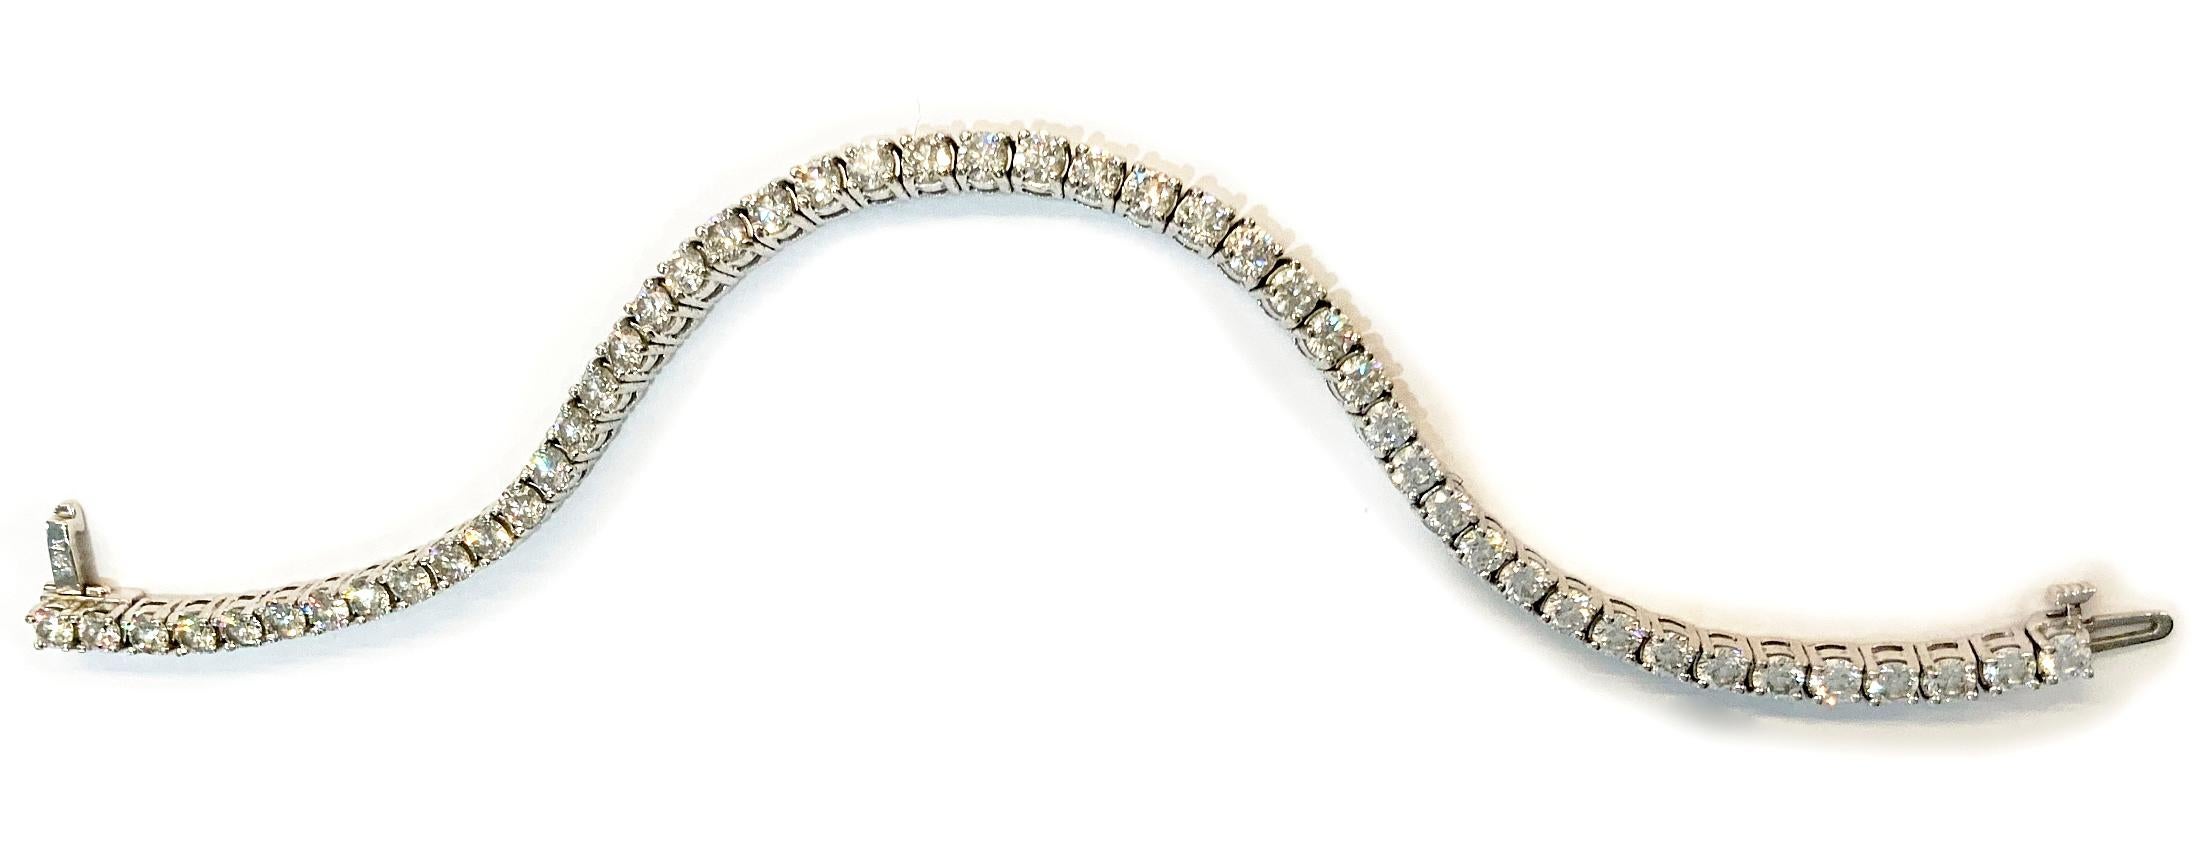 Dieses klassische und wunderschöne Tennisarmband aus Weißgold mit 47 funkelnden Diamanten im Brillantschliff ist für 8,20 Karat VS1 (feine Qualität) in der Farbe G ausgelegt. Dieses raffinierte Tennisarmband hält sicher am Handgelenk und ist daher